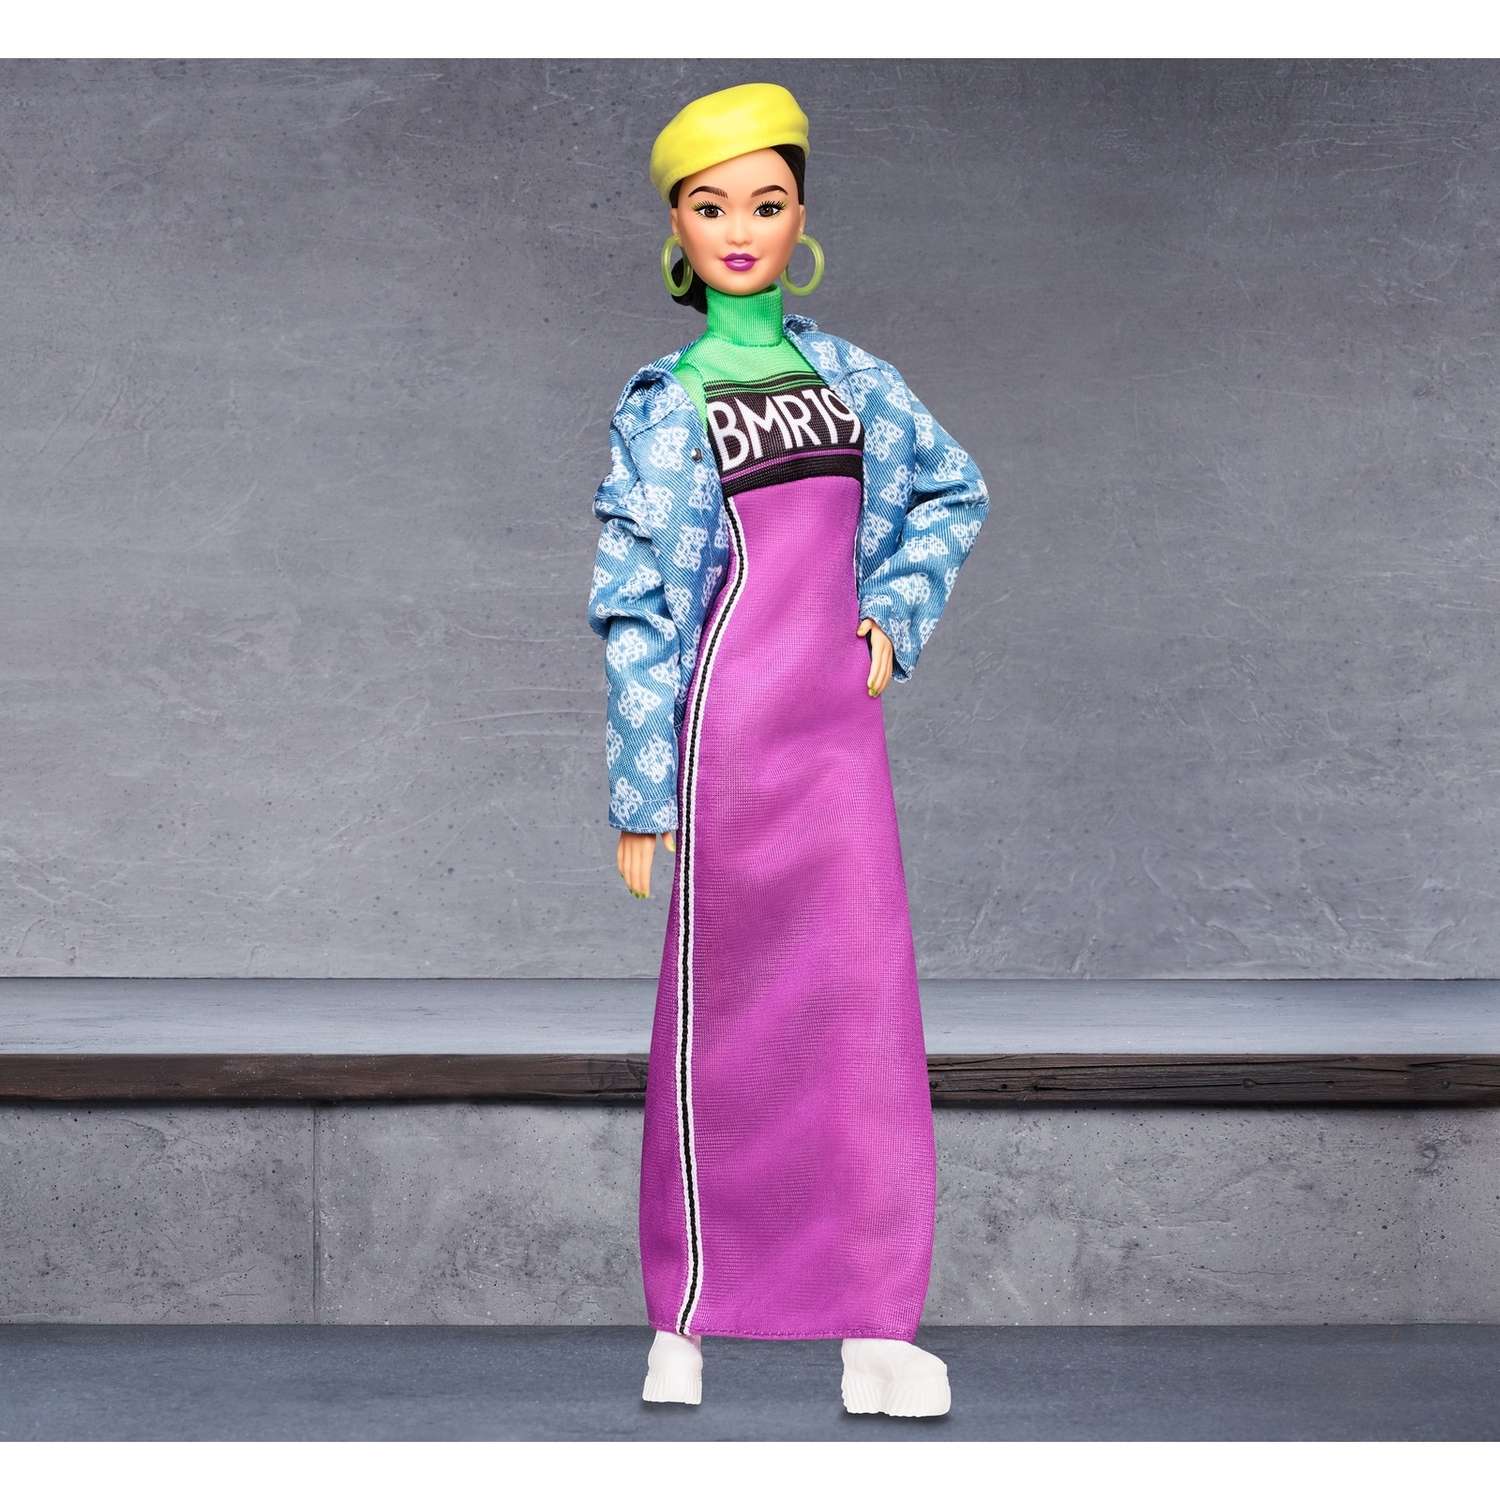 Кукла Barbie коллекционная BMR1959 GHT95 GHT95 - фото 14